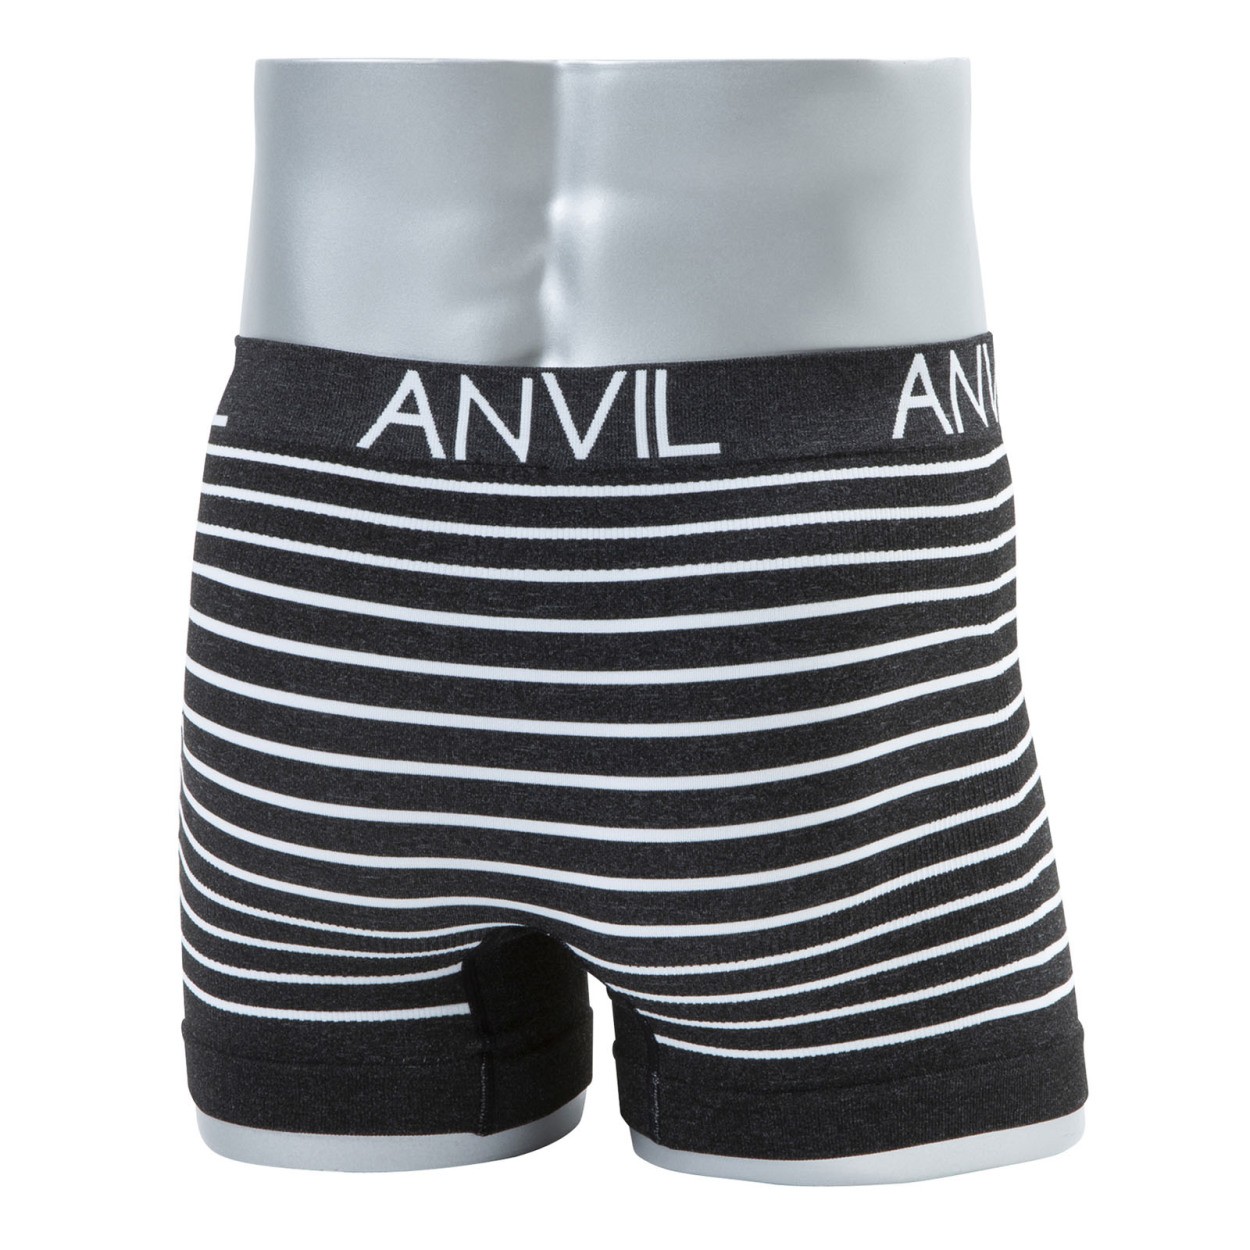 ANVIL アンビル ボクサーパンツ メンズ ボクサーブリーフ 成型